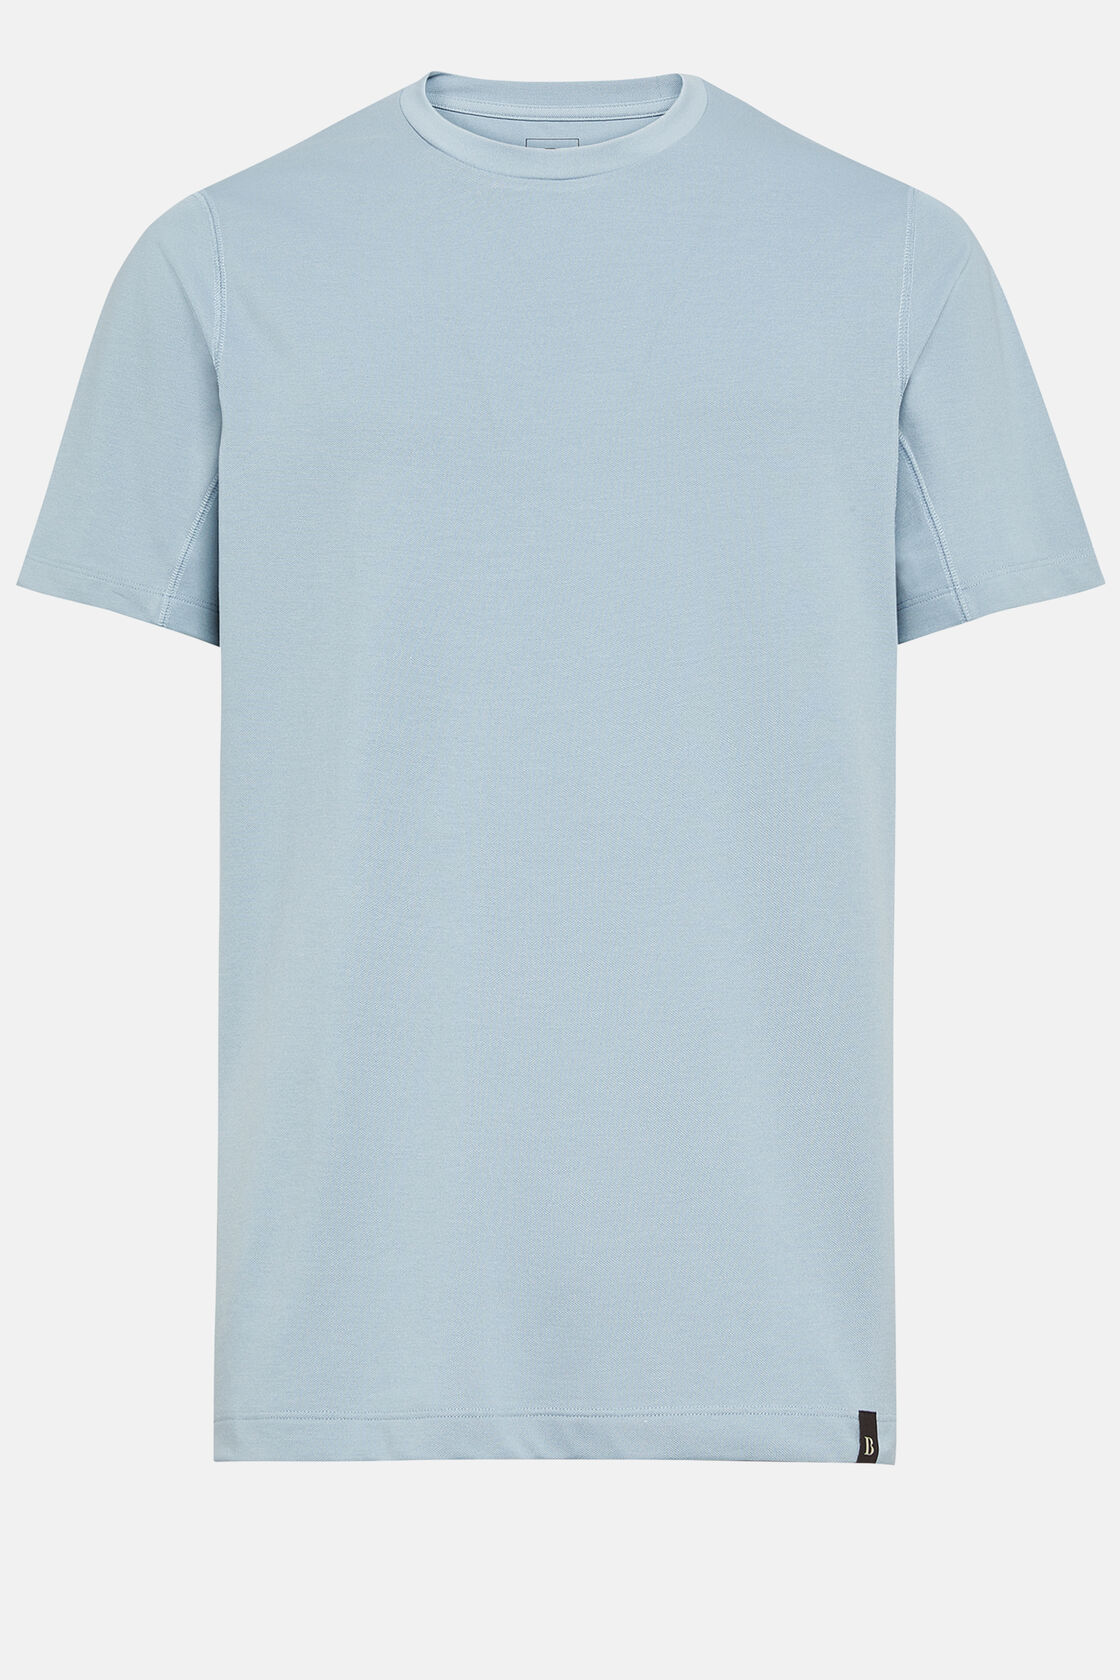 Πικέ μπλουζάκι πόλο υψηλών επιδόσεων, Light Blue, hi-res